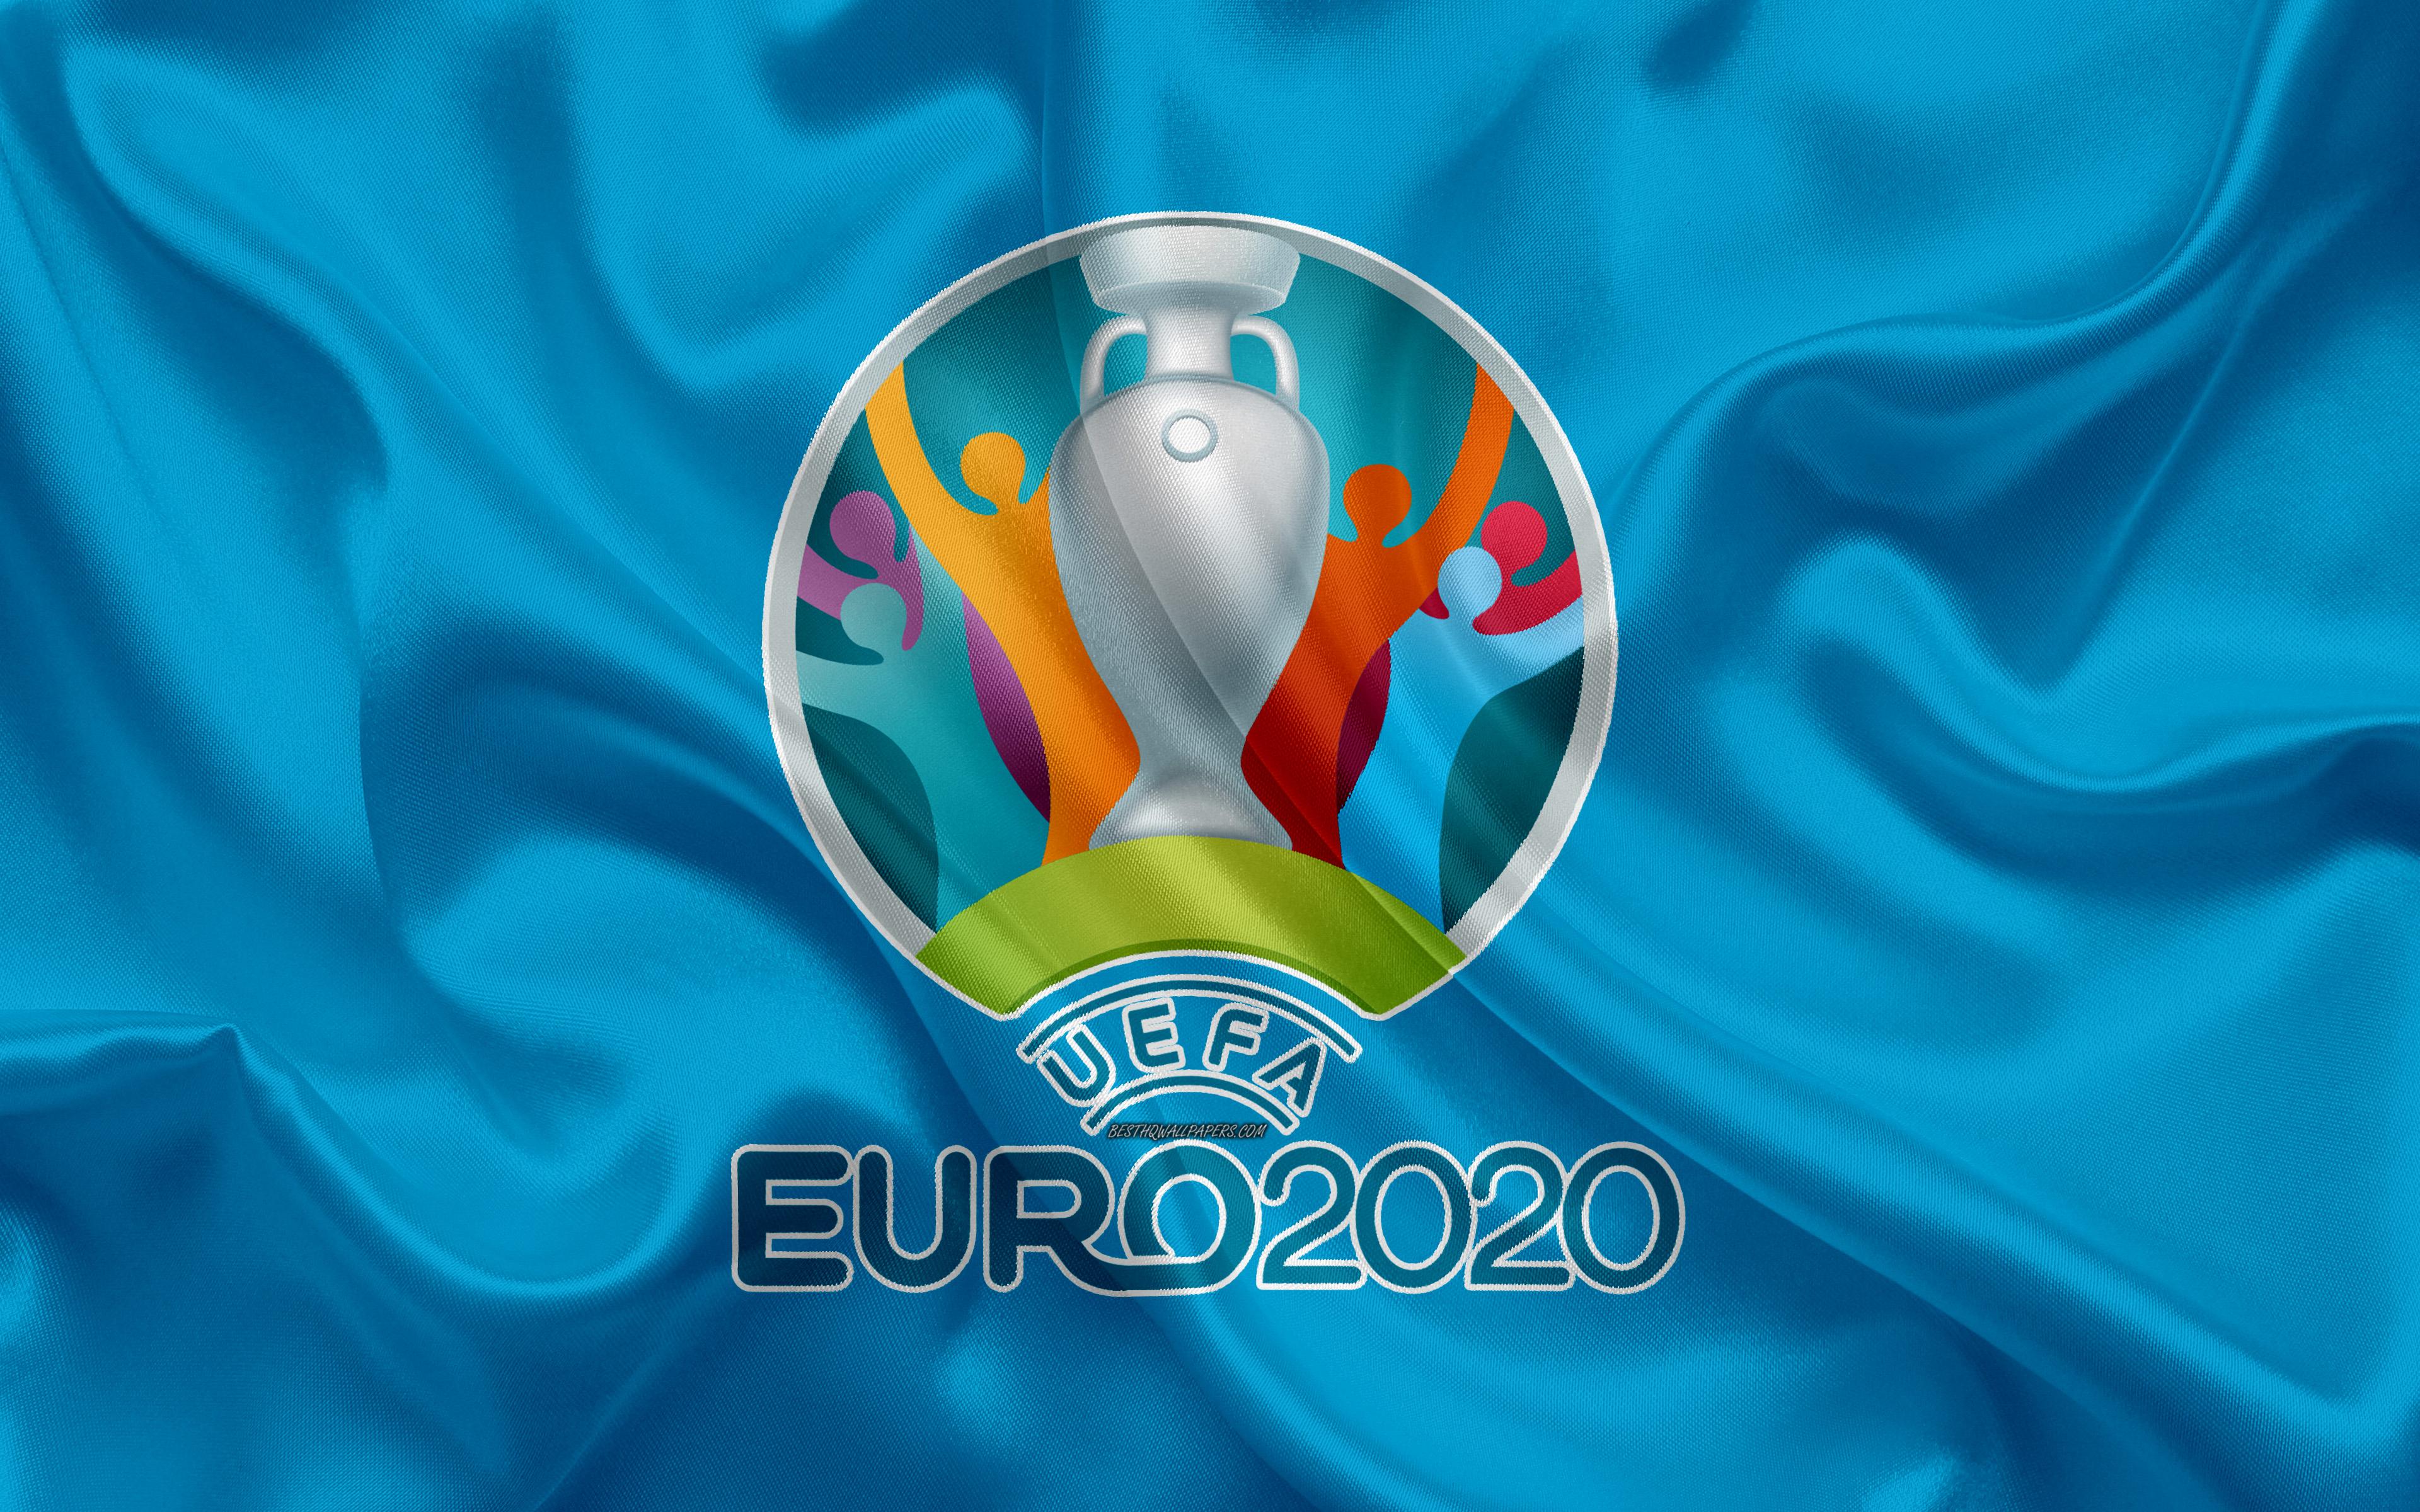 Euro 2020 Wallpaper Free Euro 2020 Background